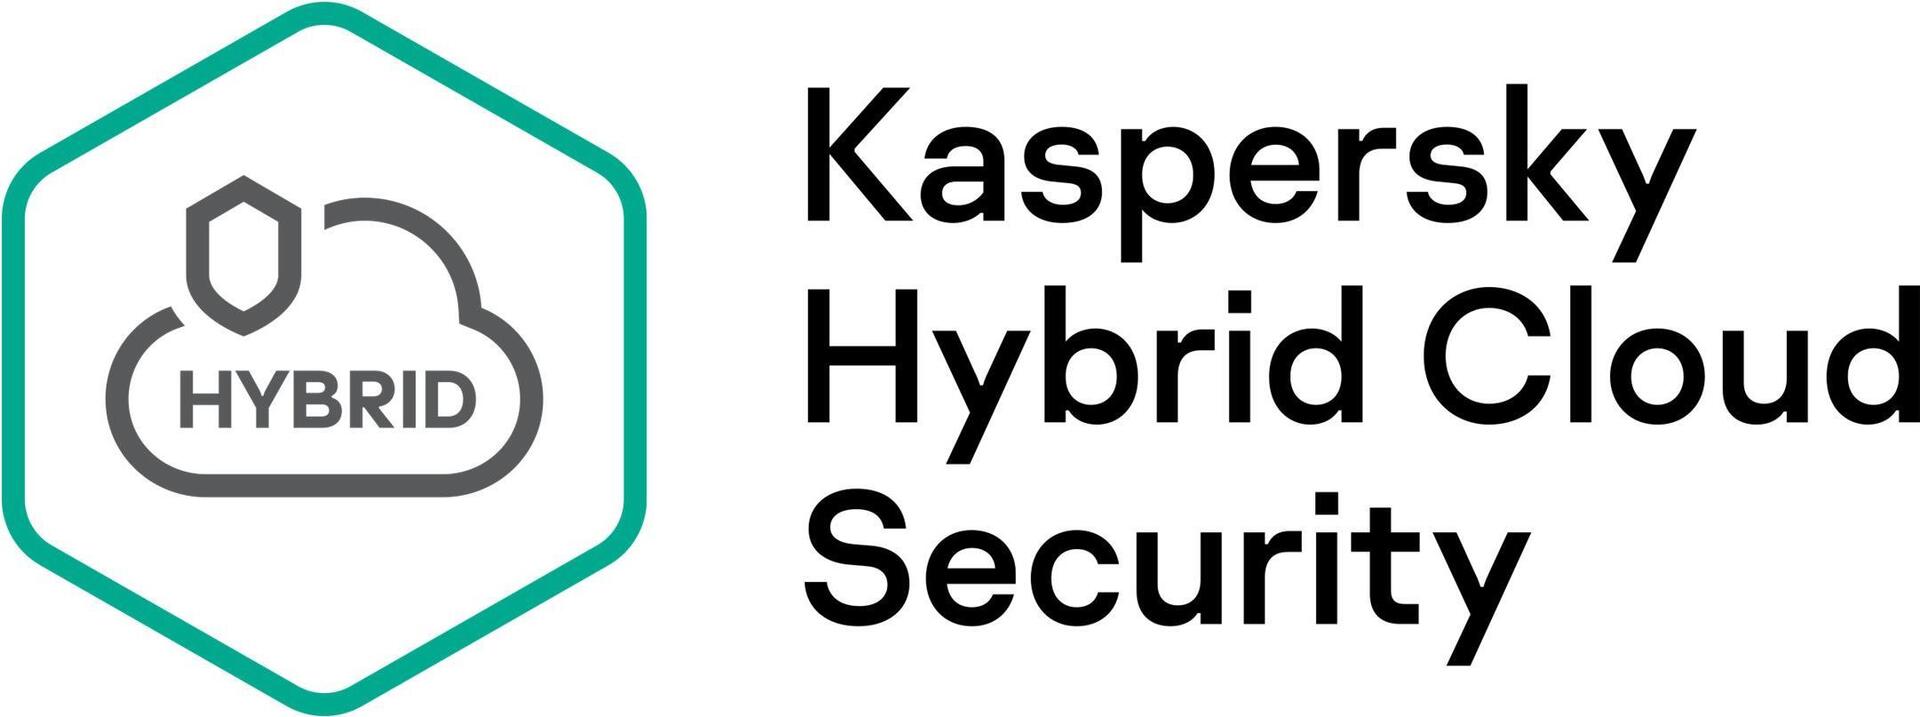 KASPERSKY Hybrid Cloud Security Enterprise CPU European Edition 4 - CPU 3 year Renewal Plus License (KL4553XADT9)